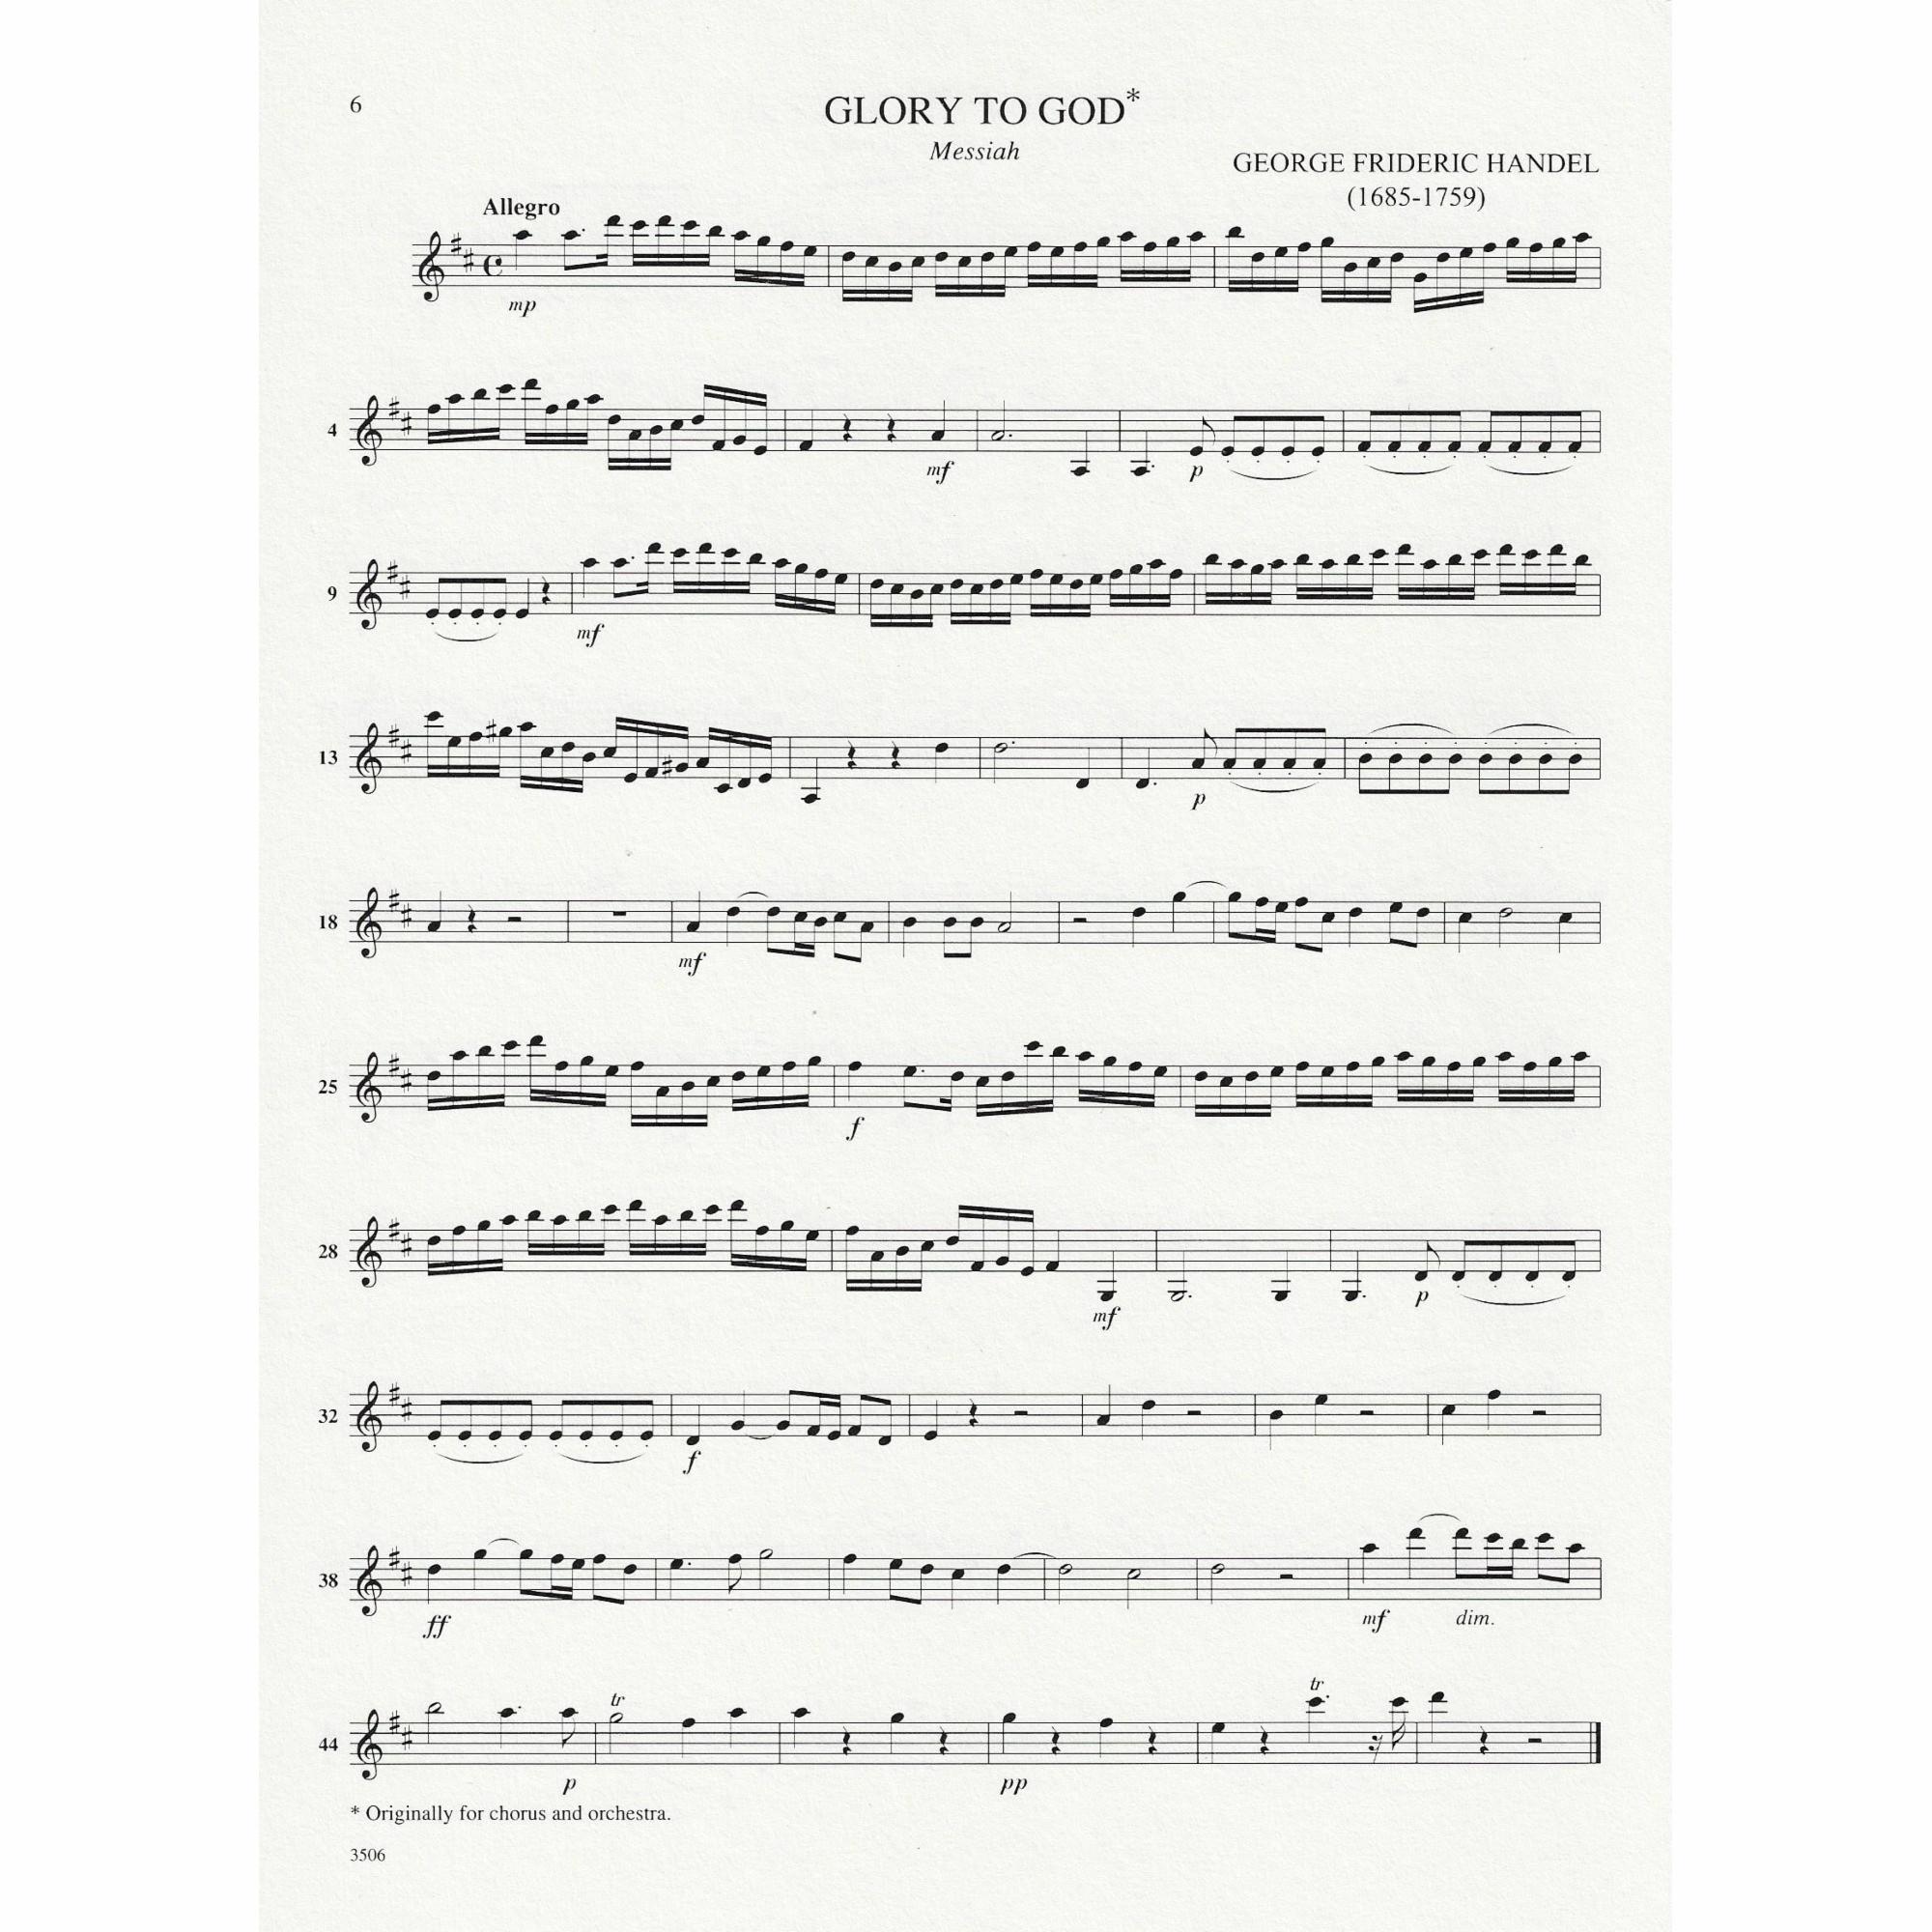 Sample: Violin I